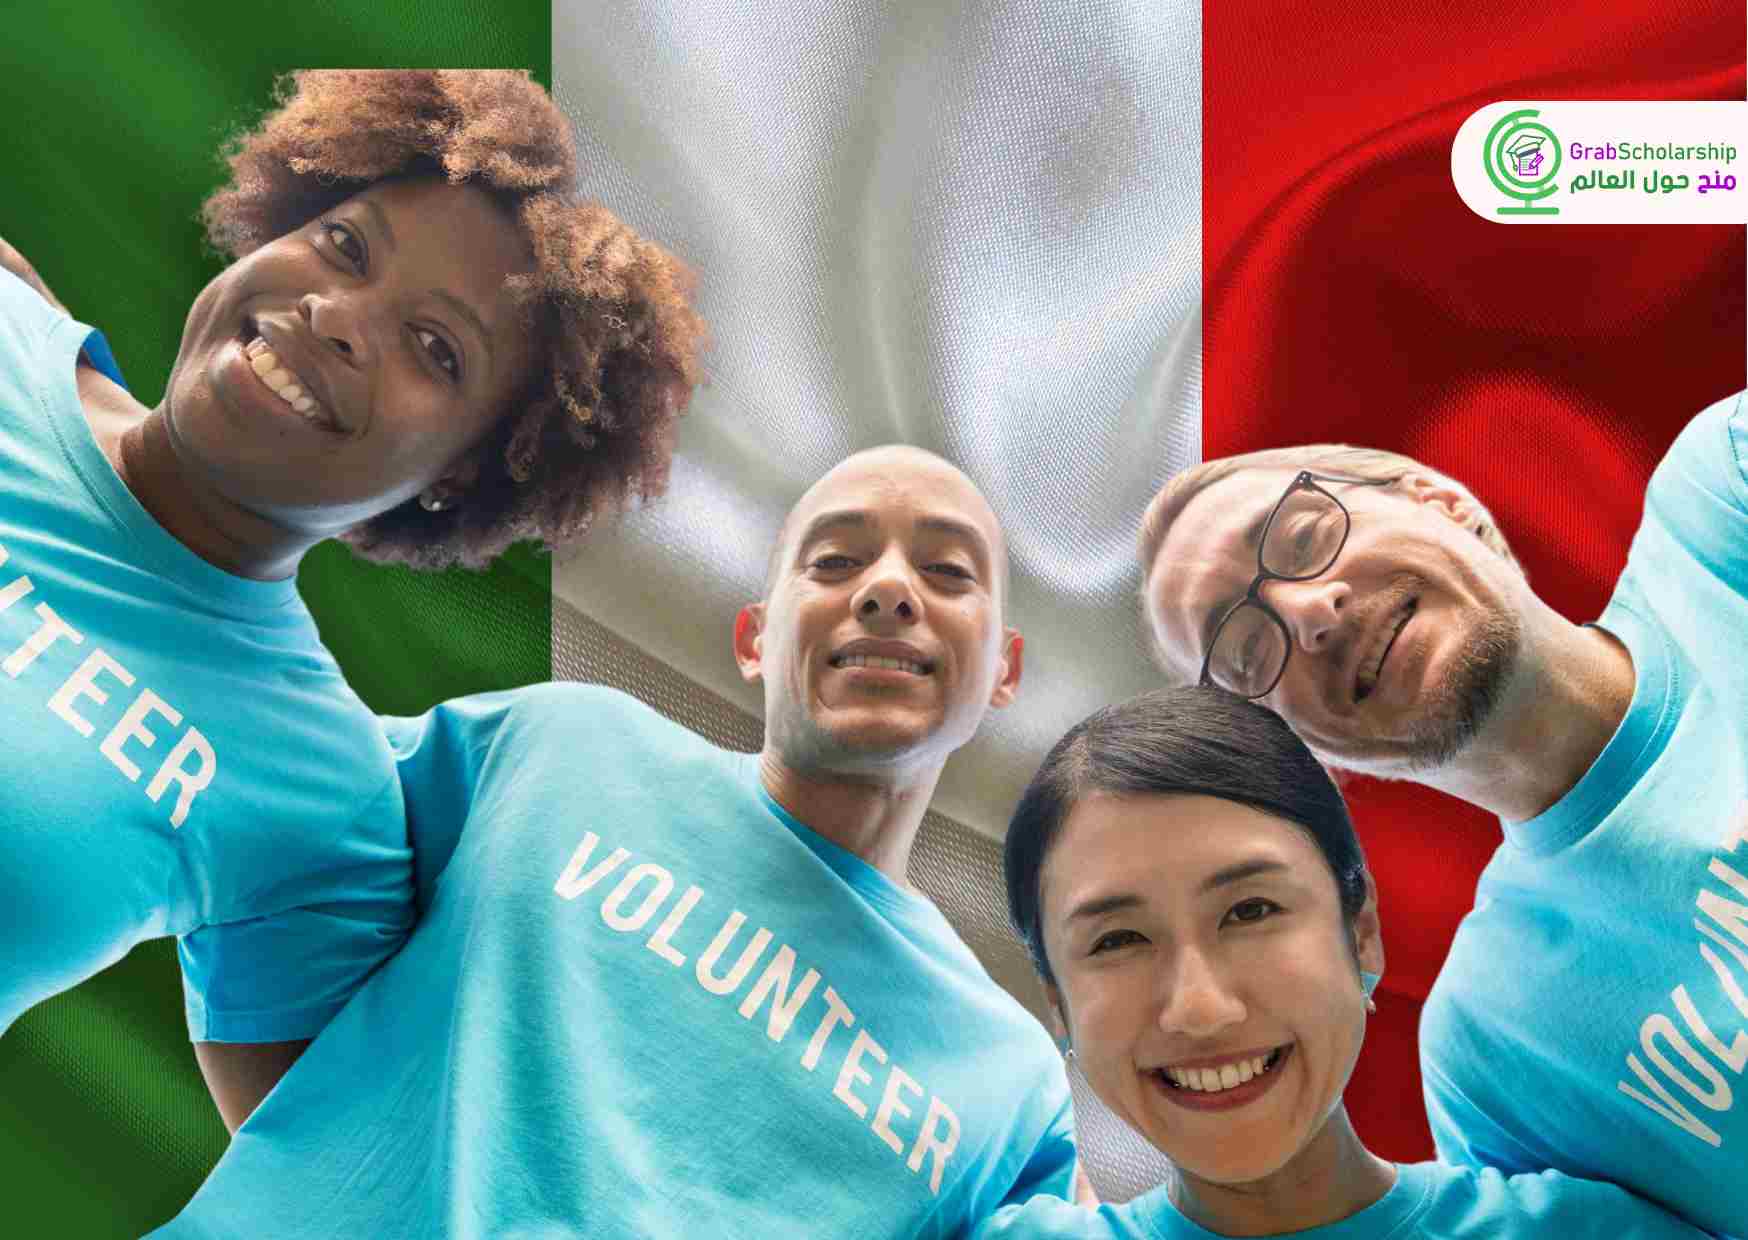 منظمة تطوع في إيطاليا تحتاج 4 متطوعين مع توفير راتب وإقامة